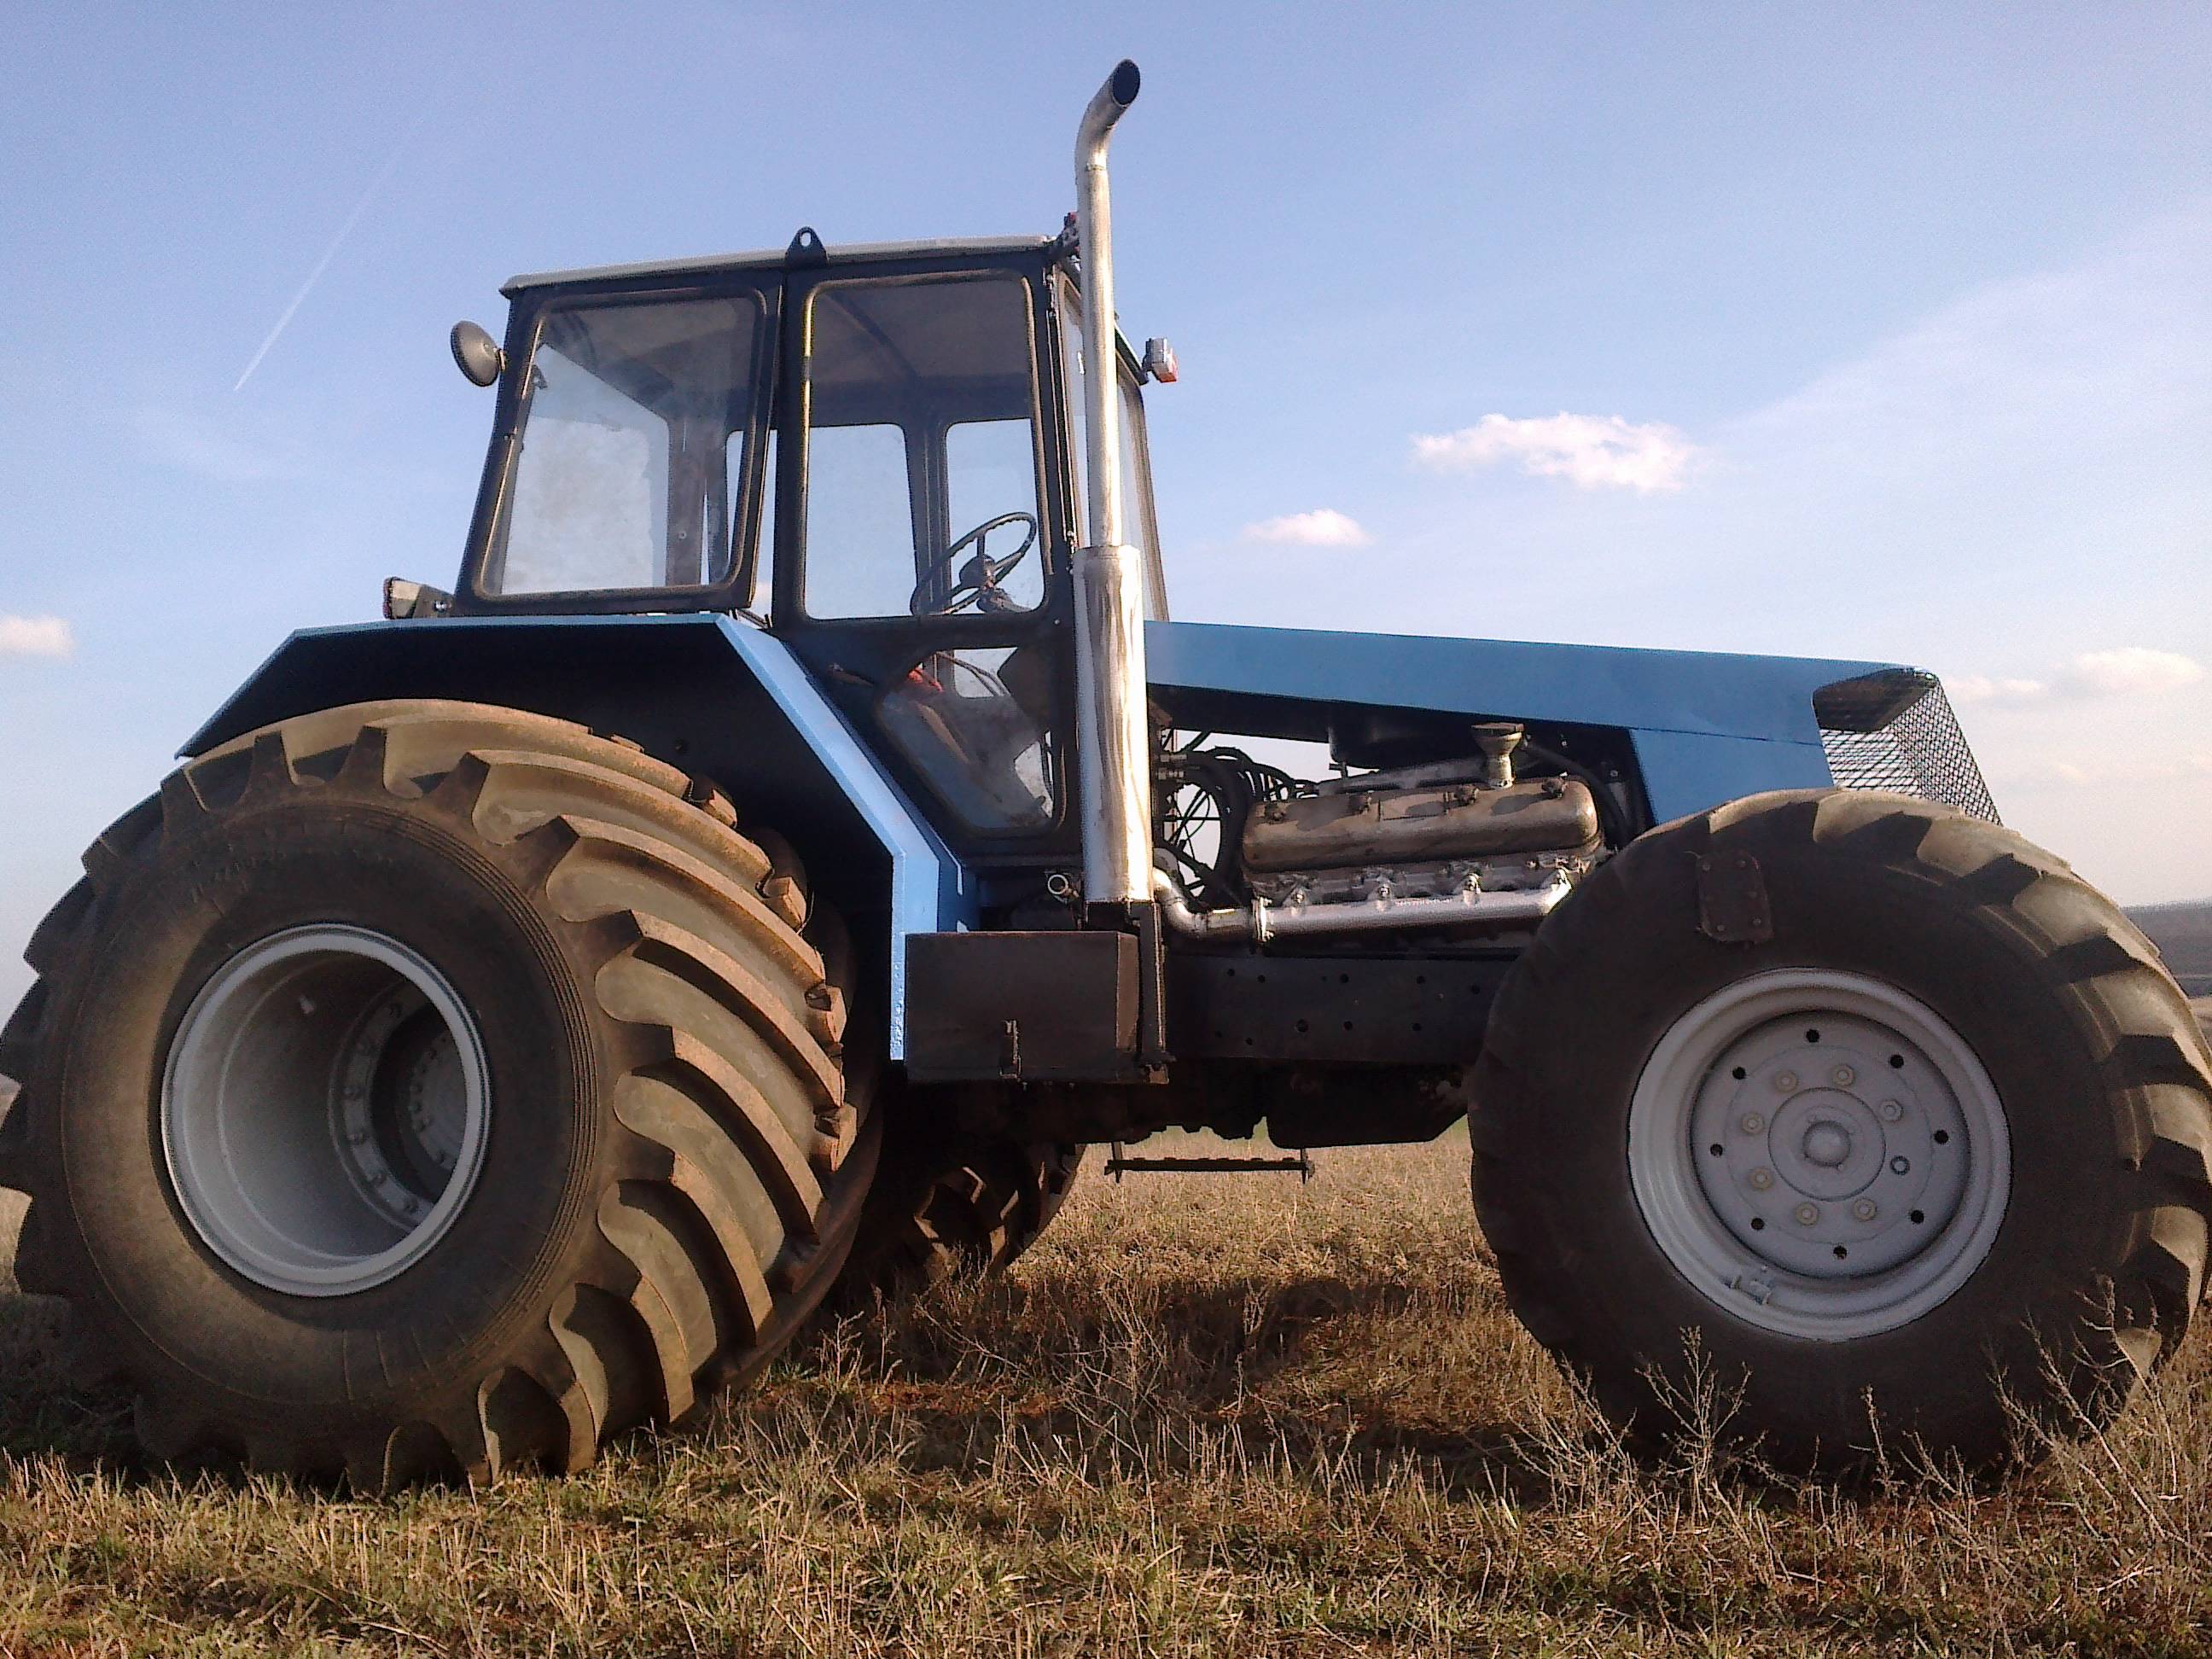 Сборка трактора бизон: своими руками, раздатка самодельный с двигателем ямз-236, сборка, чертежи и размеры, видео